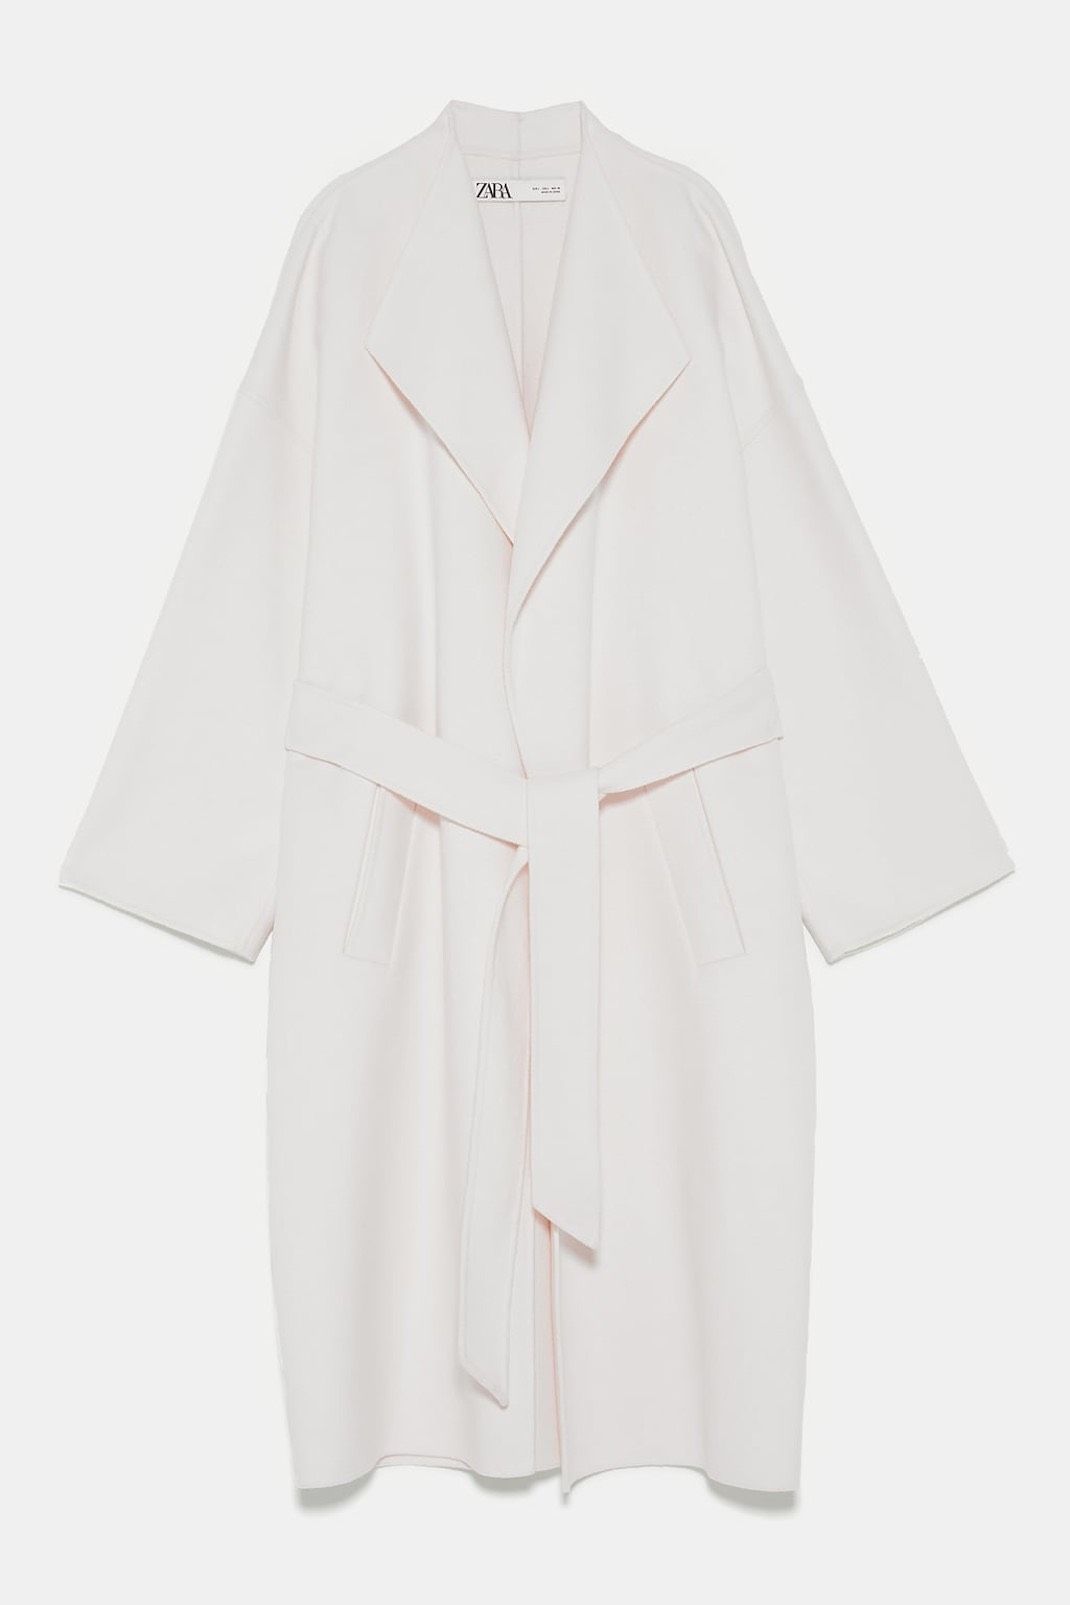 Αυτό το Zara παλτό είναι η νέα εμμονή των fashion girls | Ι LOVE STYLE